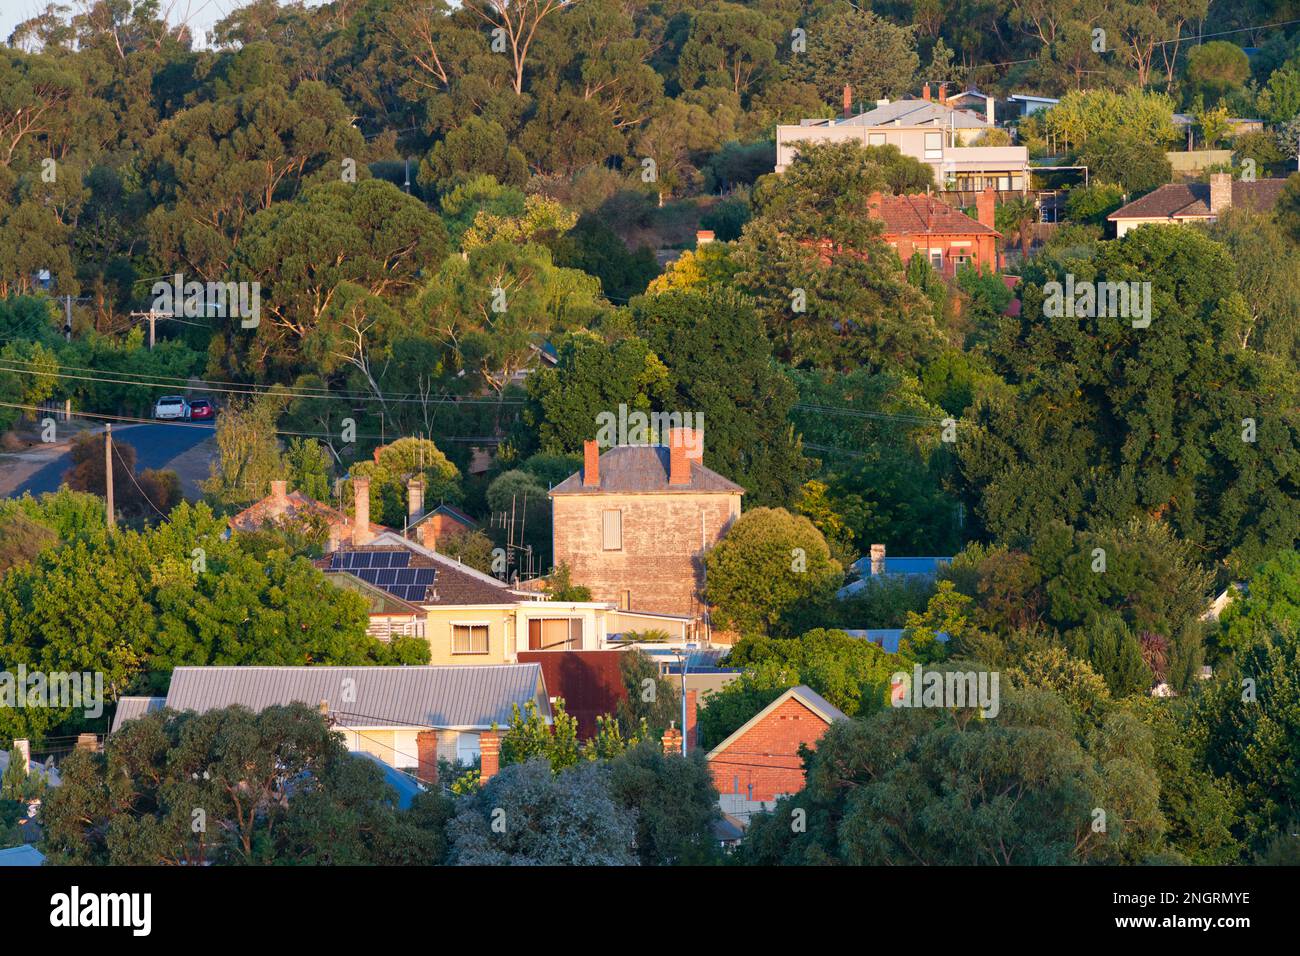 Architektur, Design und Überblick über Landhäuser, Bäume und Vorstadtstraßen in Castlemaine, Australien. Stockfoto